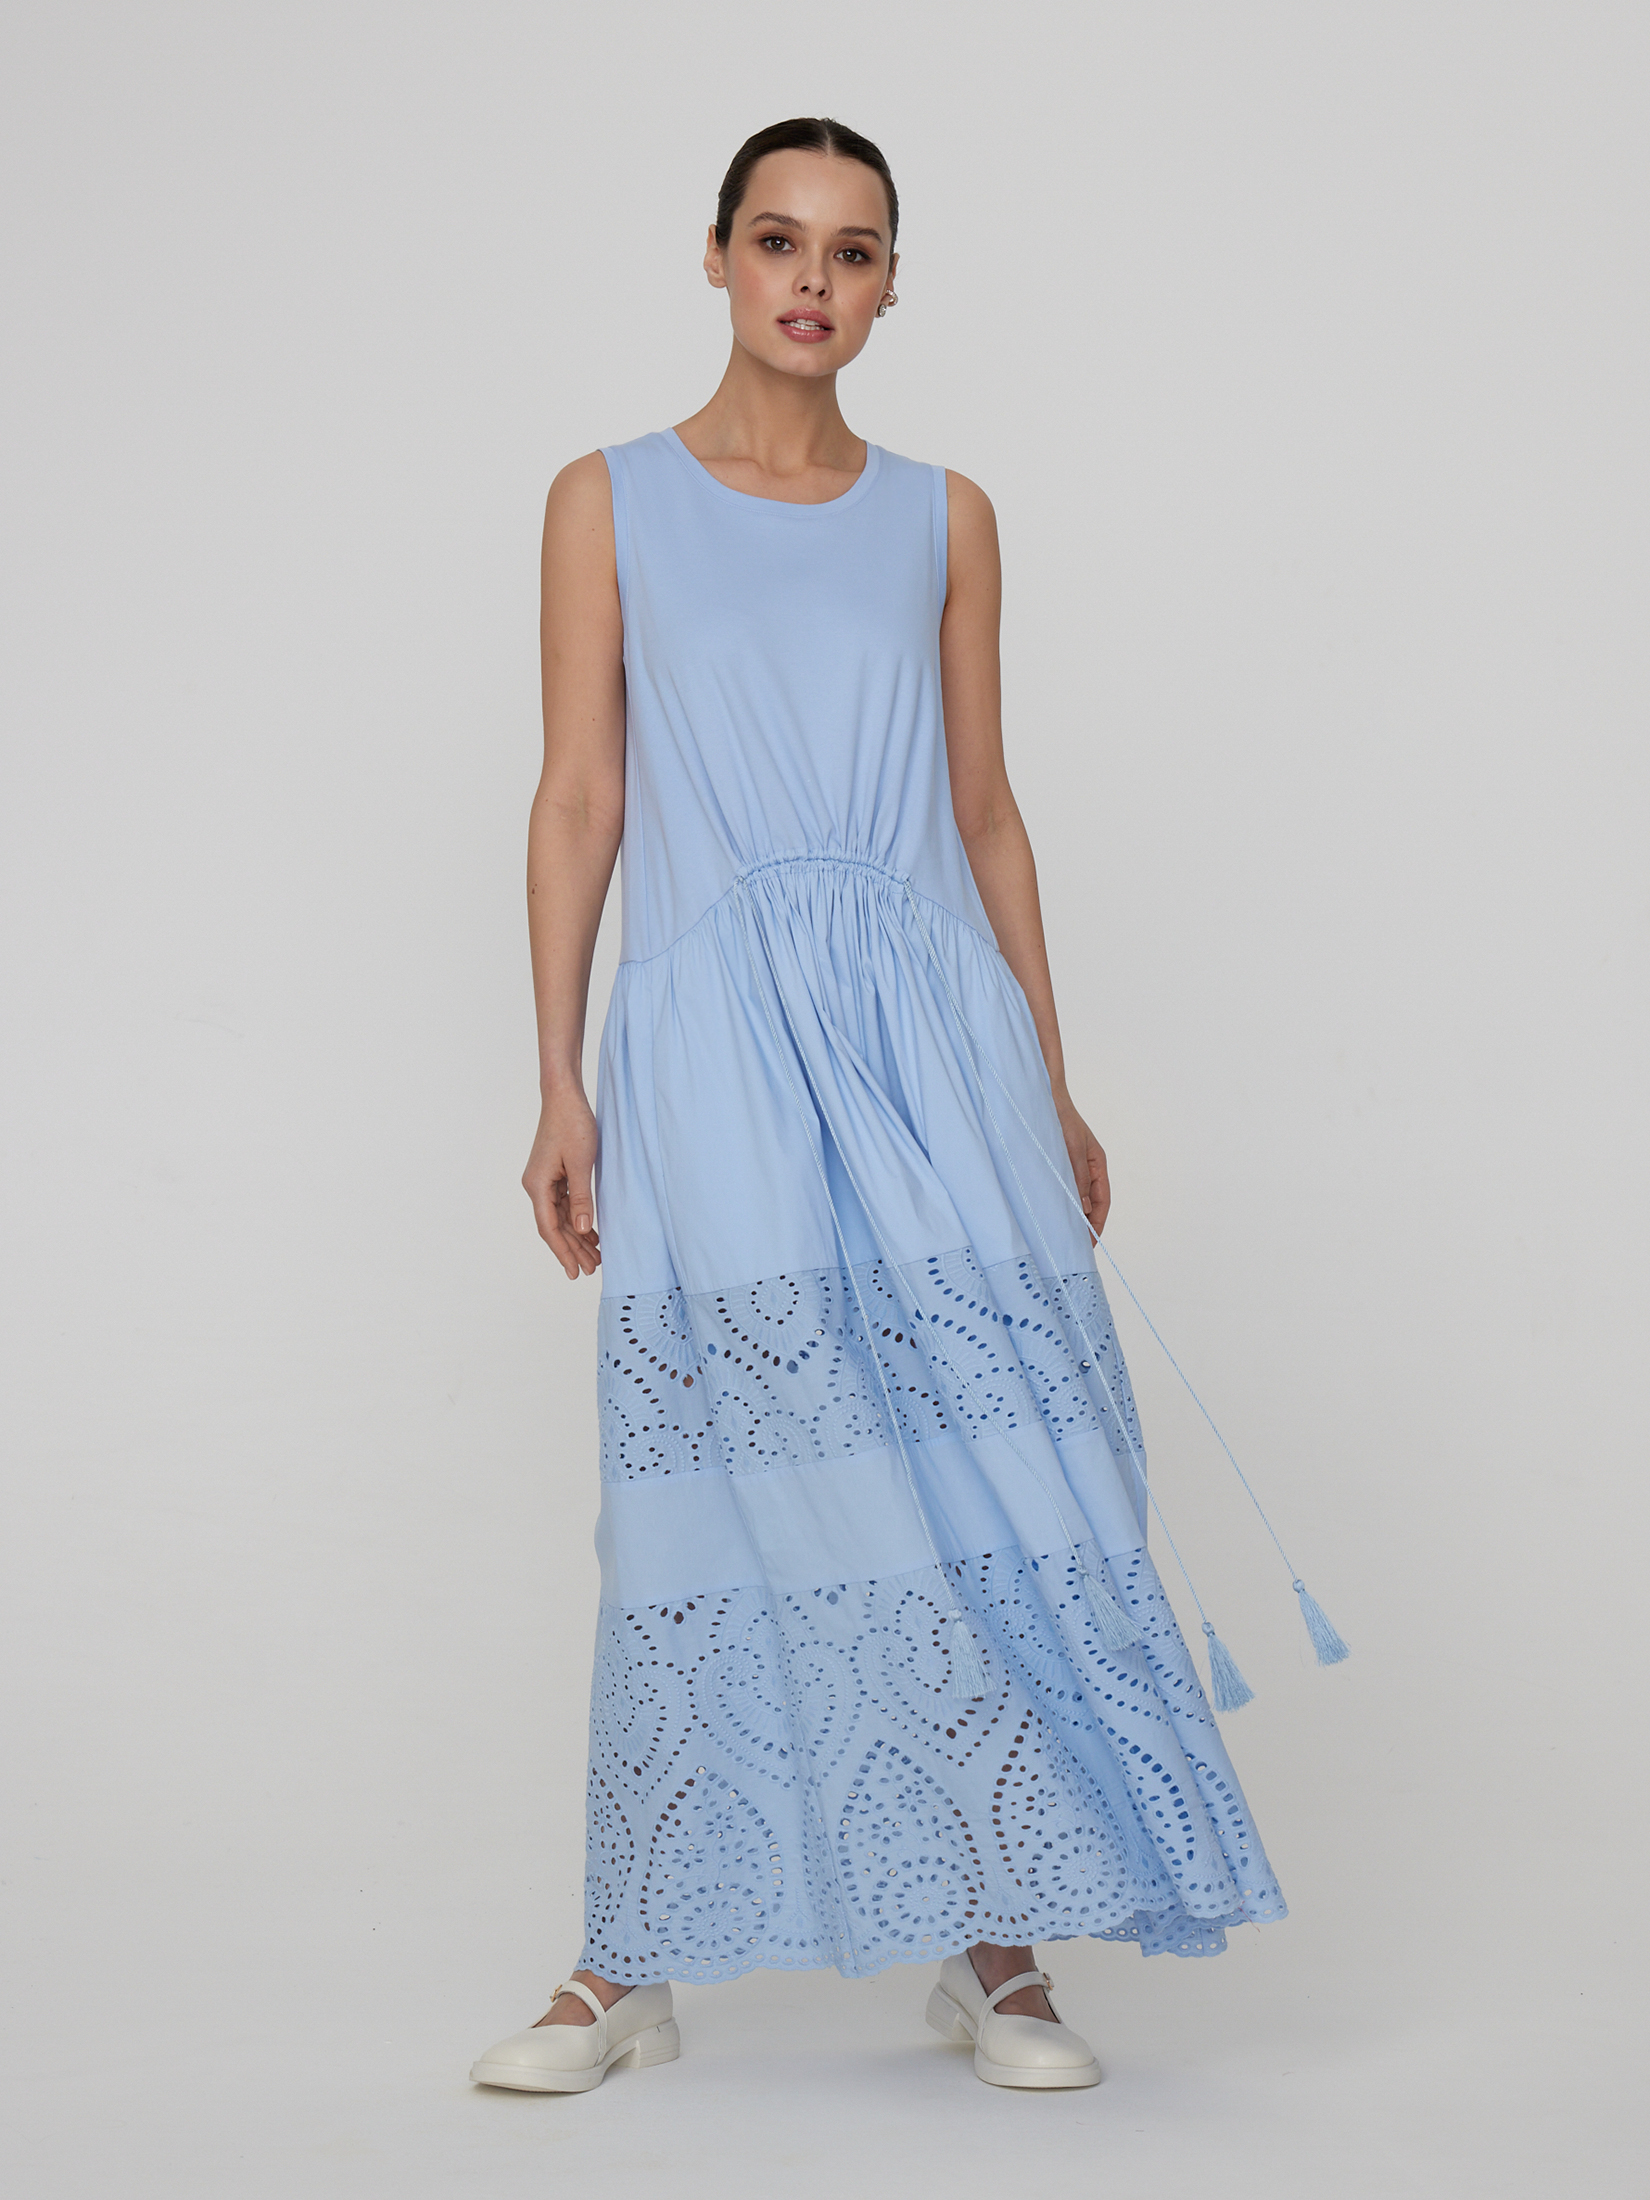 Платье женское лагуна платье malina хлопок карманы размер 44 46 синий голубой